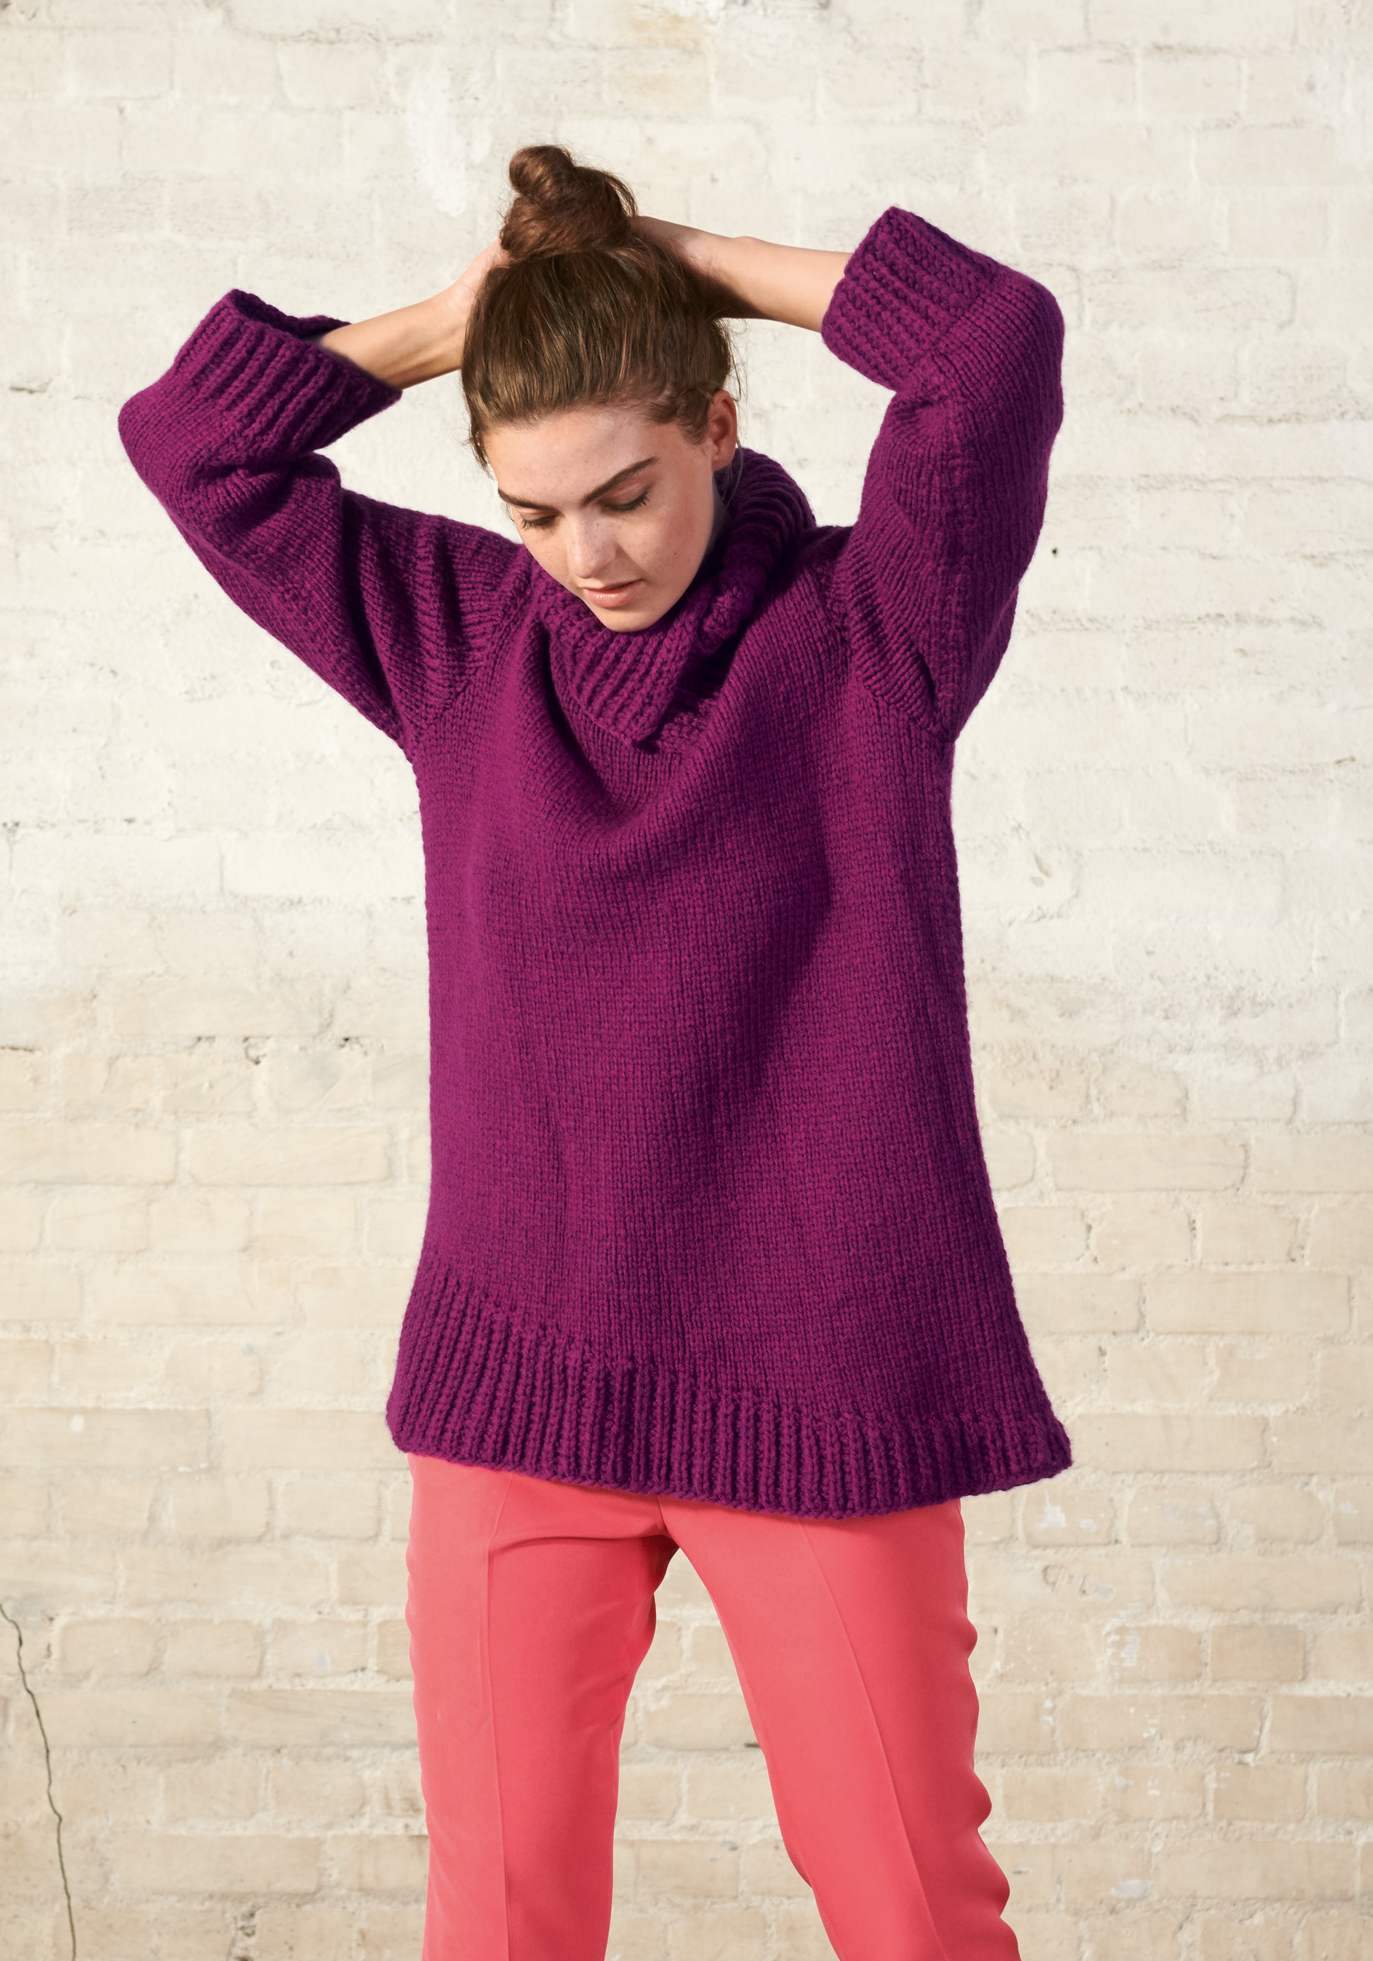 Pullover mit geteiltem Kragen - Strickset von LANA GROSSA jetzt online kaufen bei OONIQUE